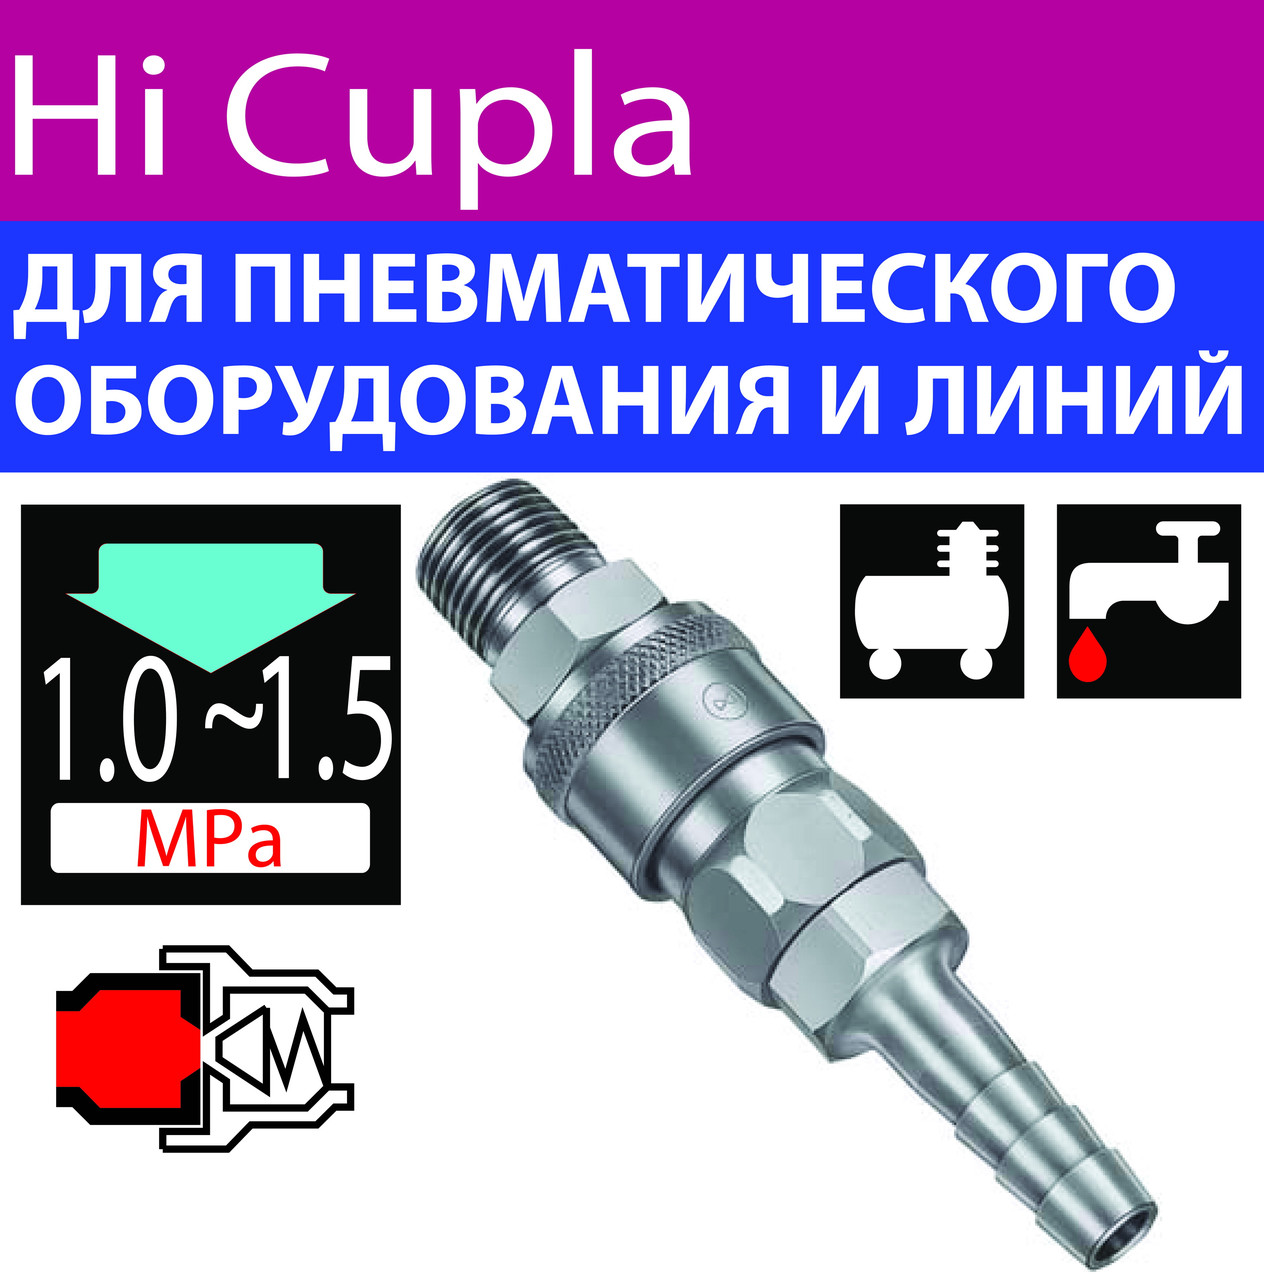 Швидкорознімні з'єднання для повітря пневматичного інструменту Hi Cupla, фото 1